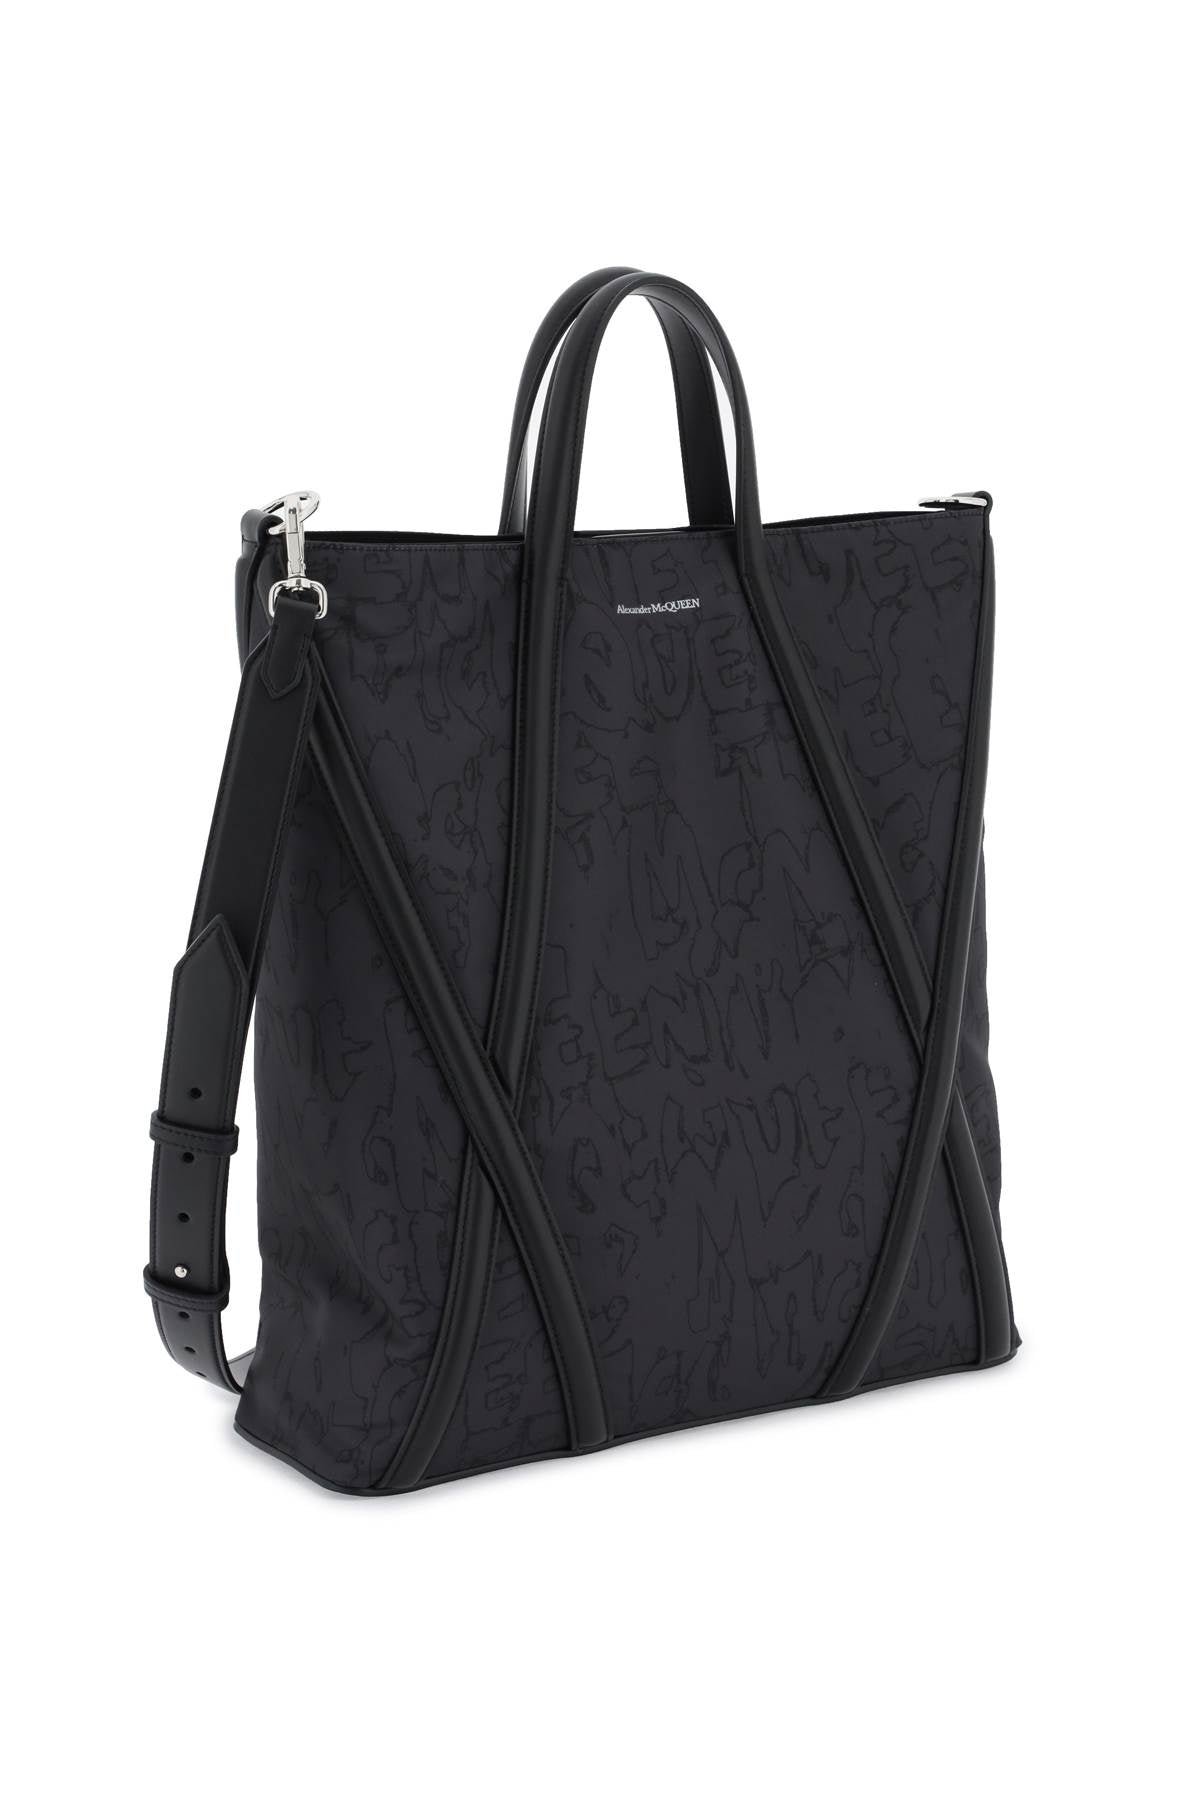 Túi đeo vai Nylon nam màu đen với họa tiết Graffiti toàn phần và chi tiết Harness